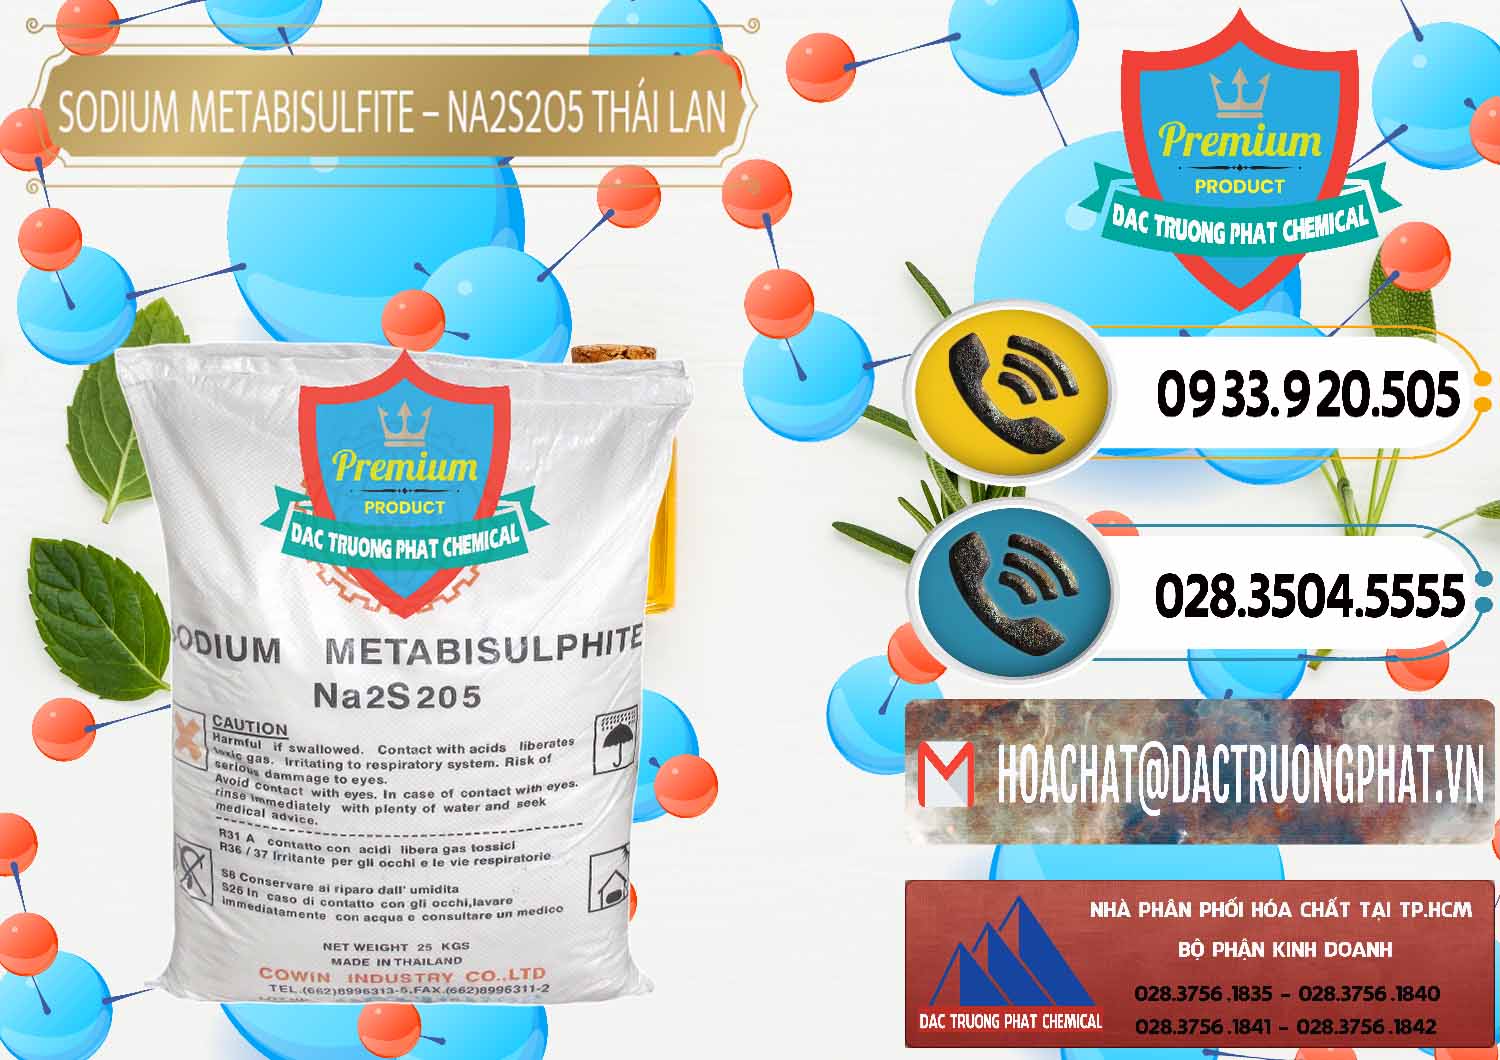 Cty bán ( cung ứng ) Sodium Metabisulfite - NA2S2O5 Thái Lan Cowin - 0145 - Công ty chuyên nhập khẩu - phân phối hóa chất tại TP.HCM - hoachatdetnhuom.vn